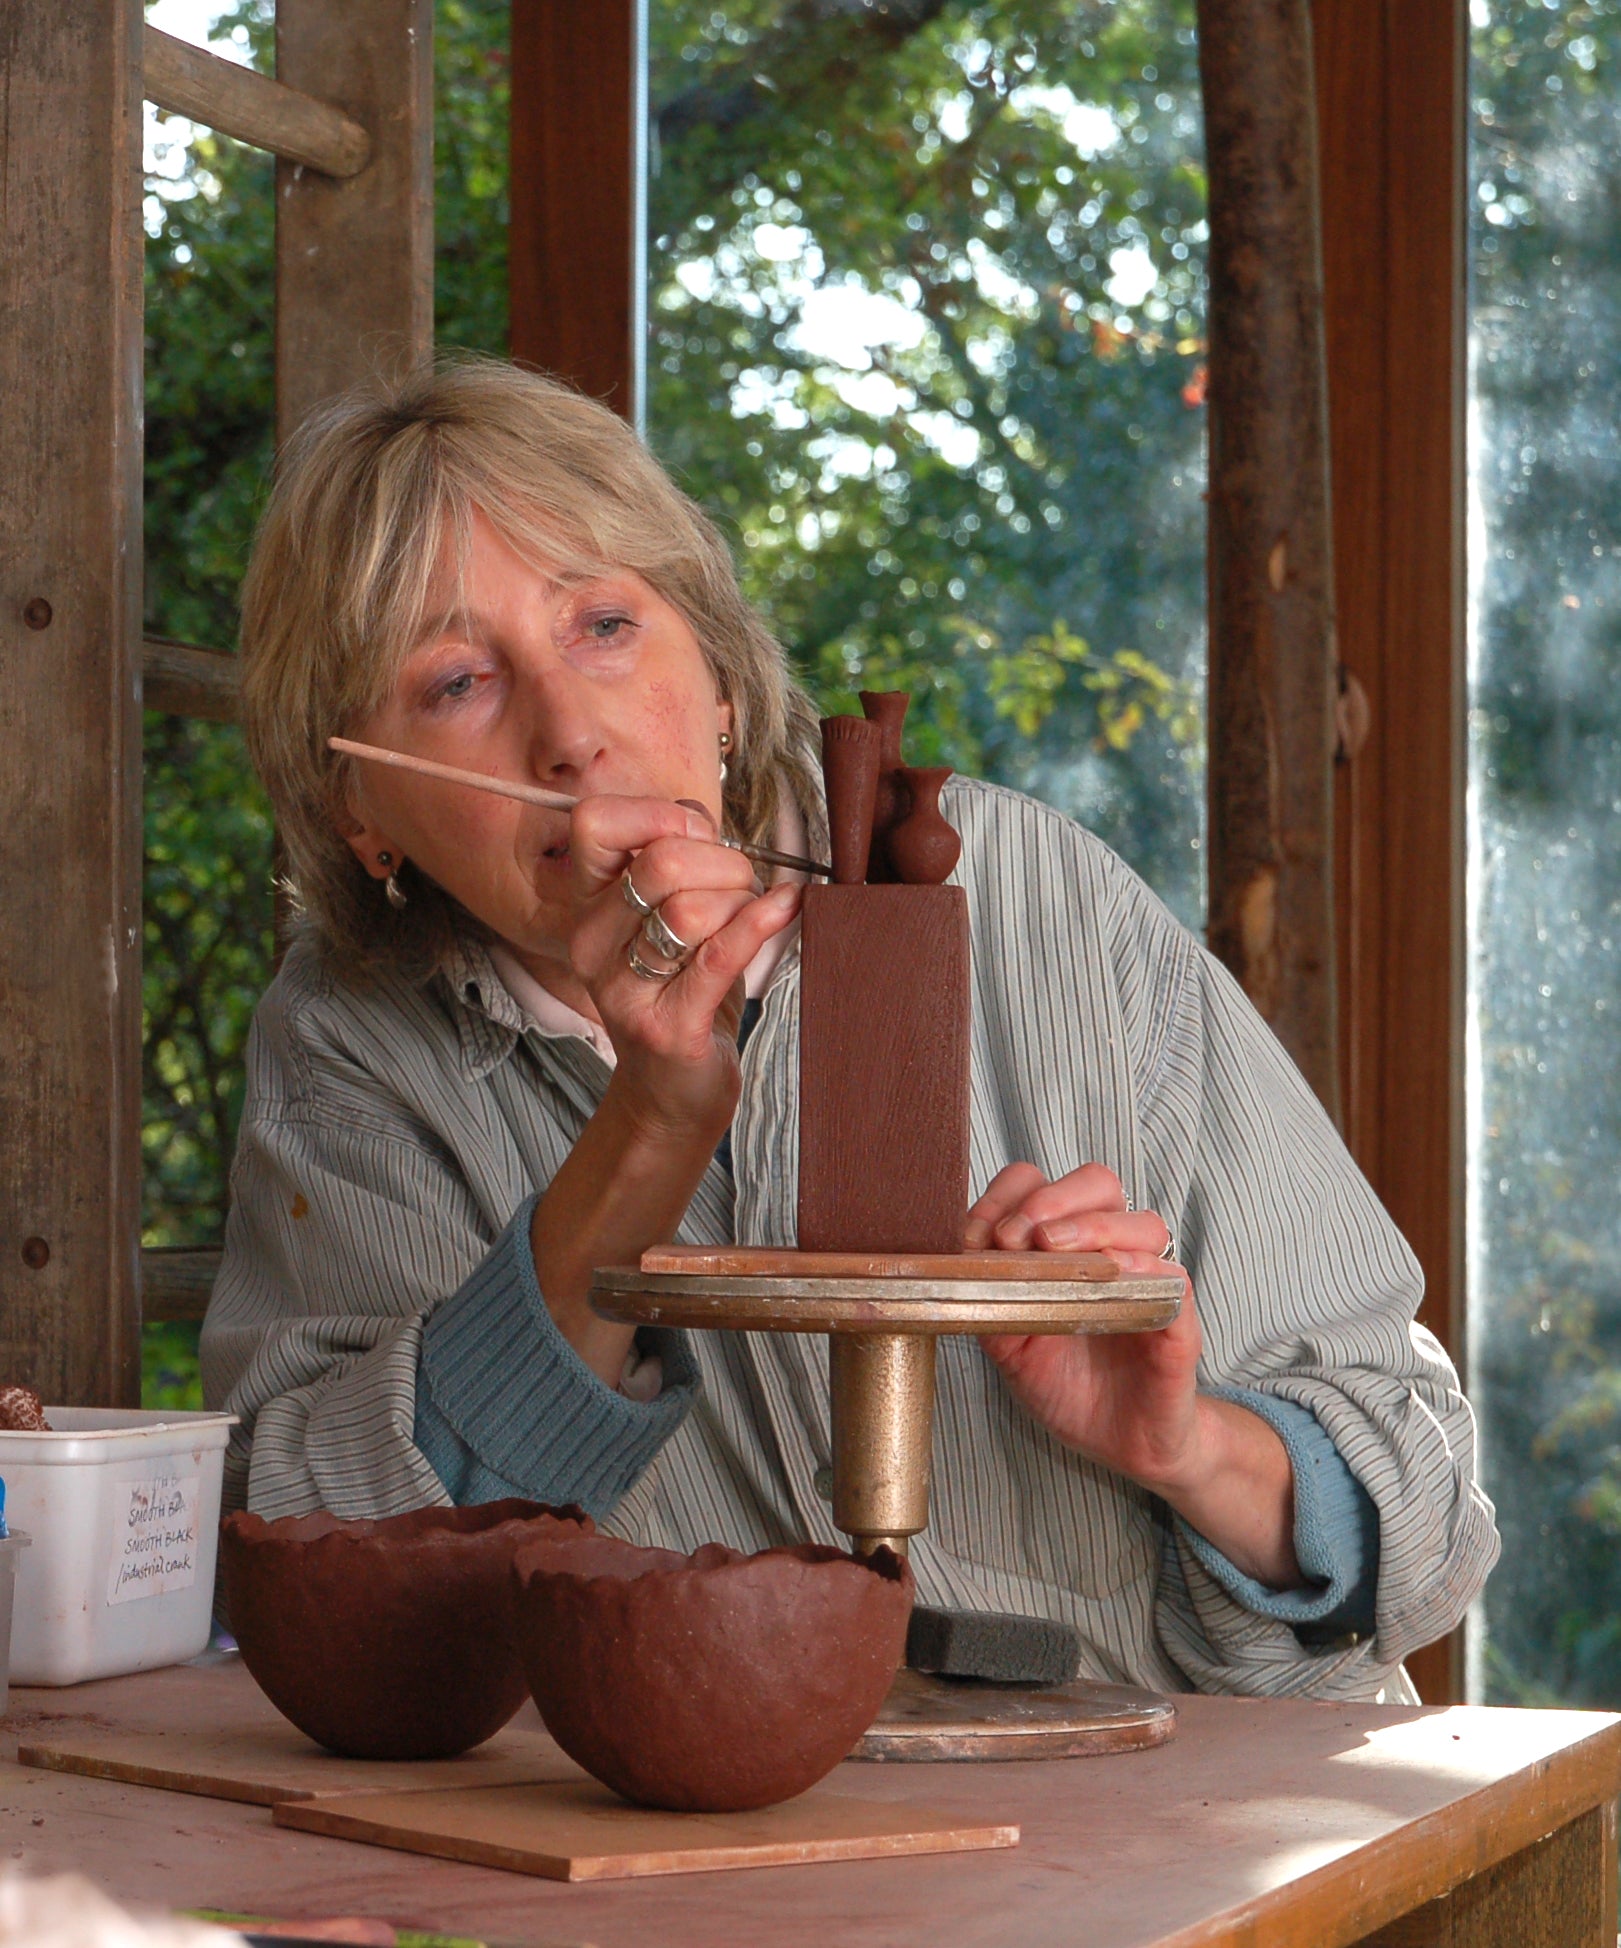 Jane Silk, ceramicist, at work in her studio